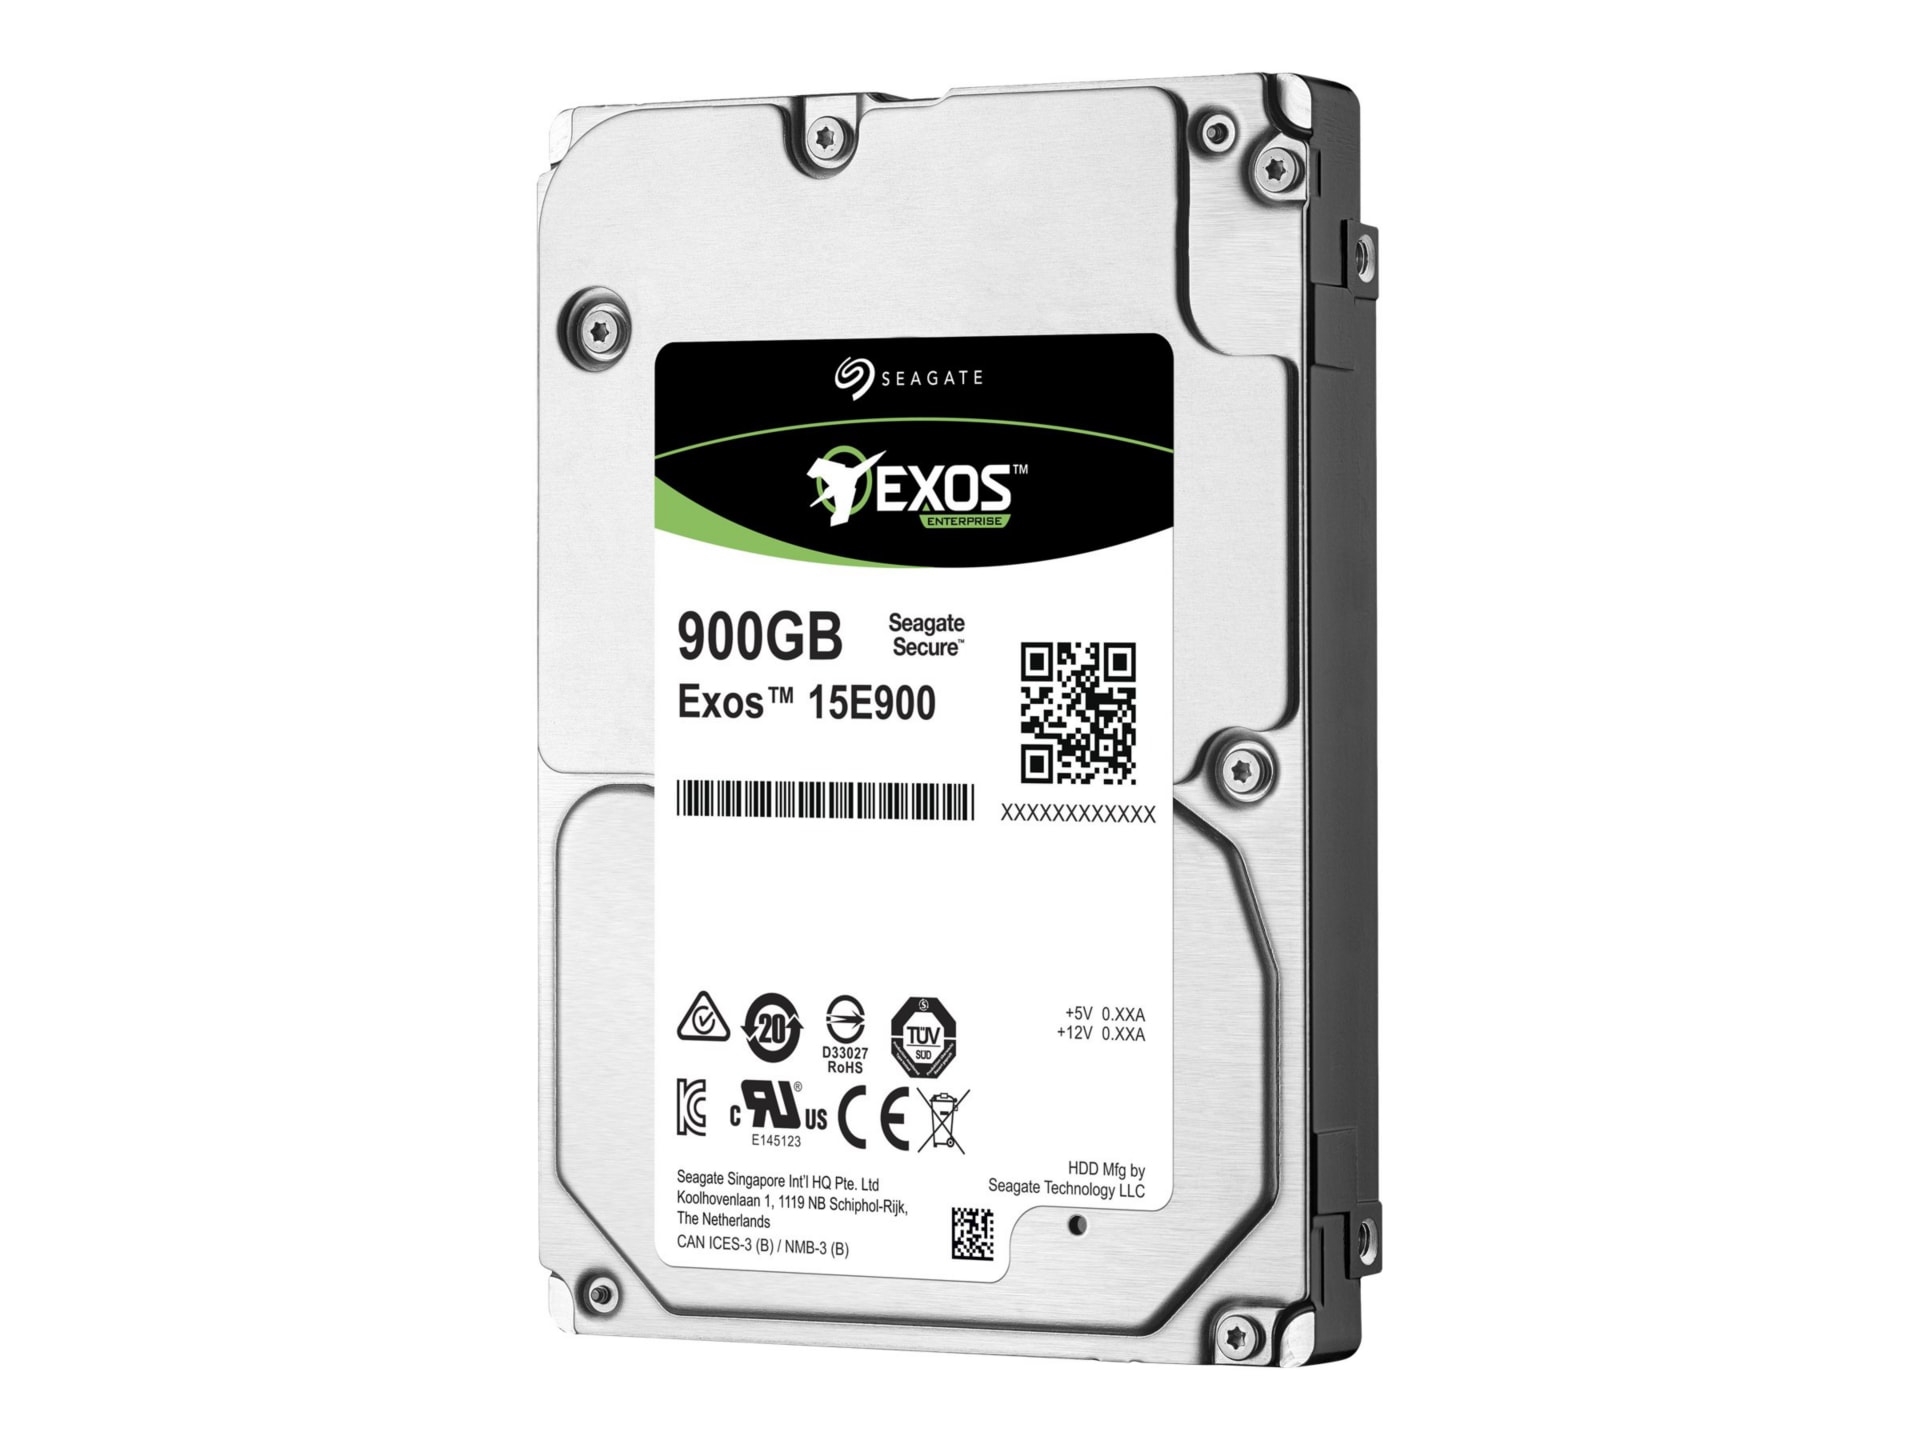 Seagate Exos 15E900 ST900MP0006 - hard drive - 900 GB - SAS 12Gb/s